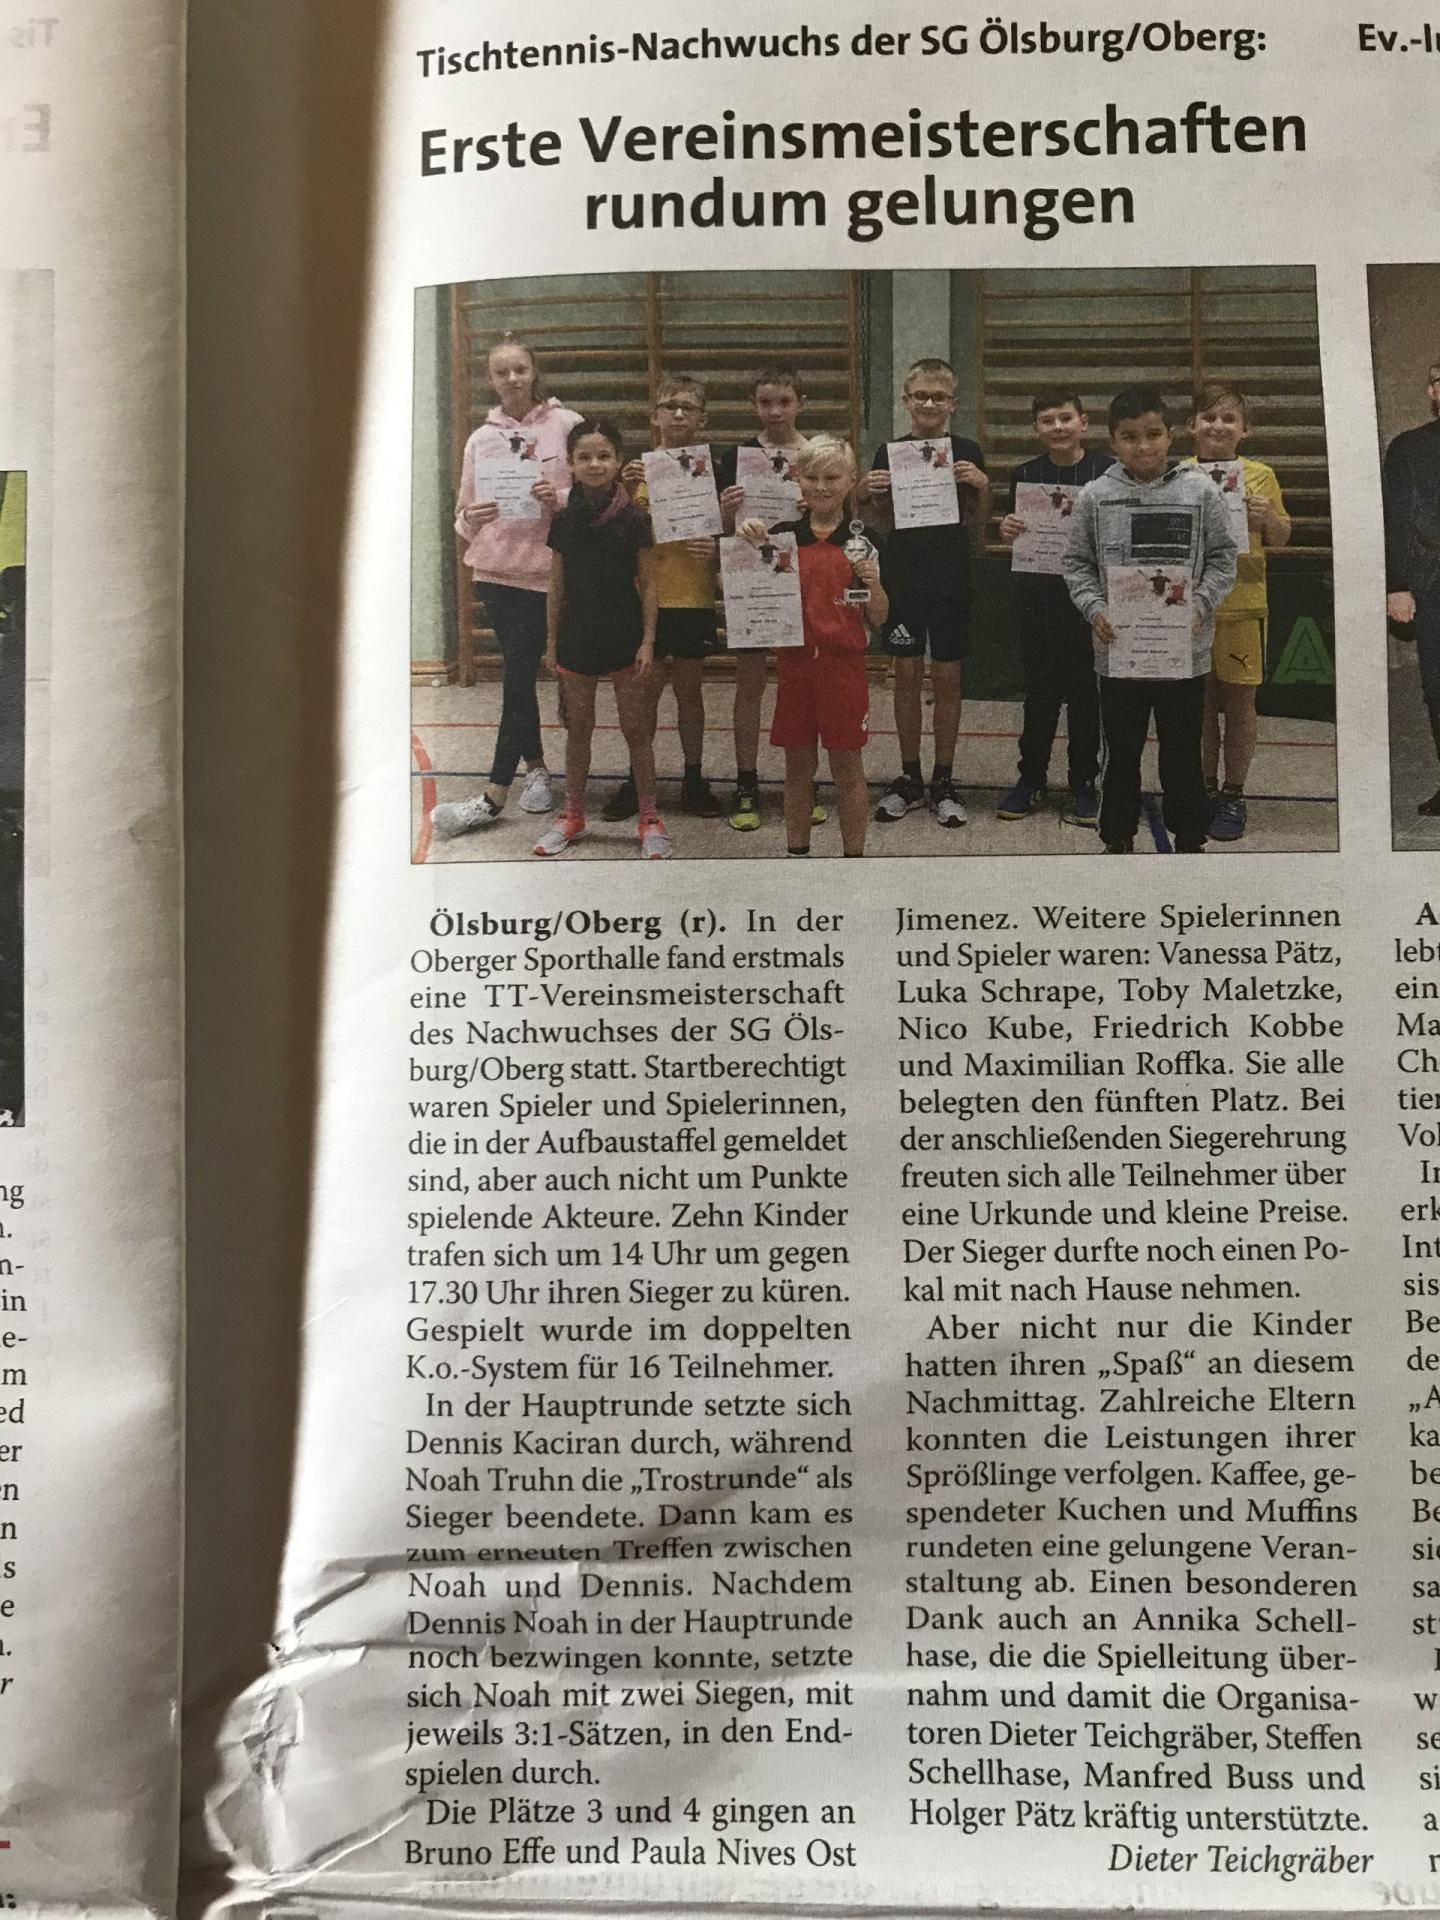 Tischtennis-Nachwuchs der SG Ölsburg/Oberg